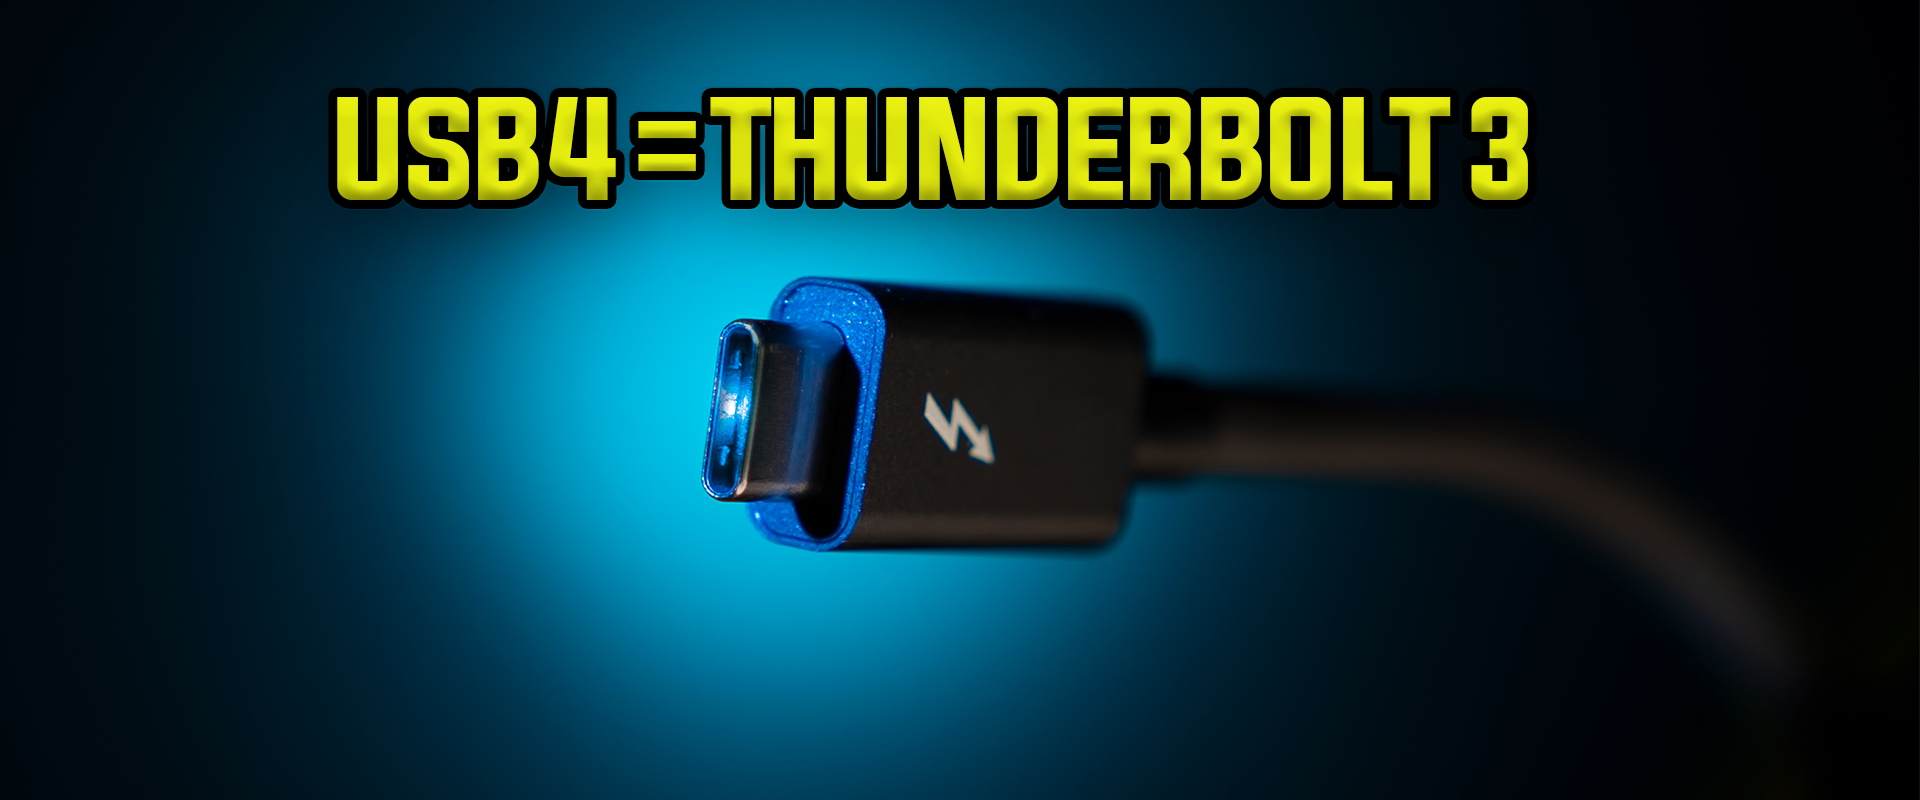 Thunderbolt 3 sebességgel érkezik az USB 4.0